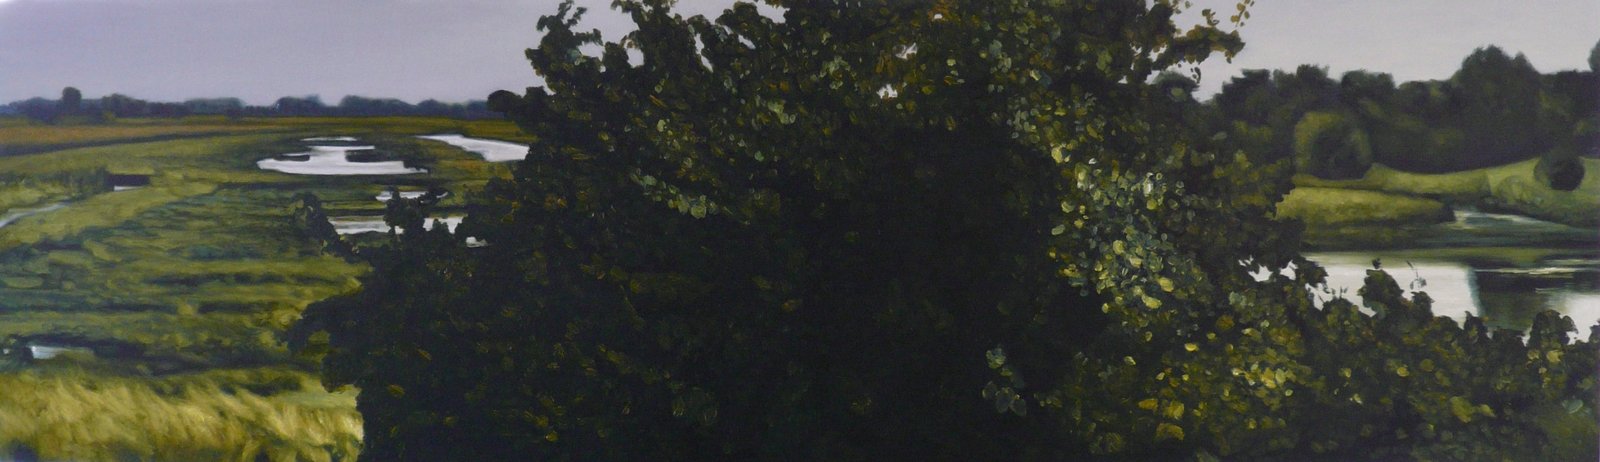 'Inzicht', Jan Neven, olieverf op paneel, 135 x 39 cm, 2010